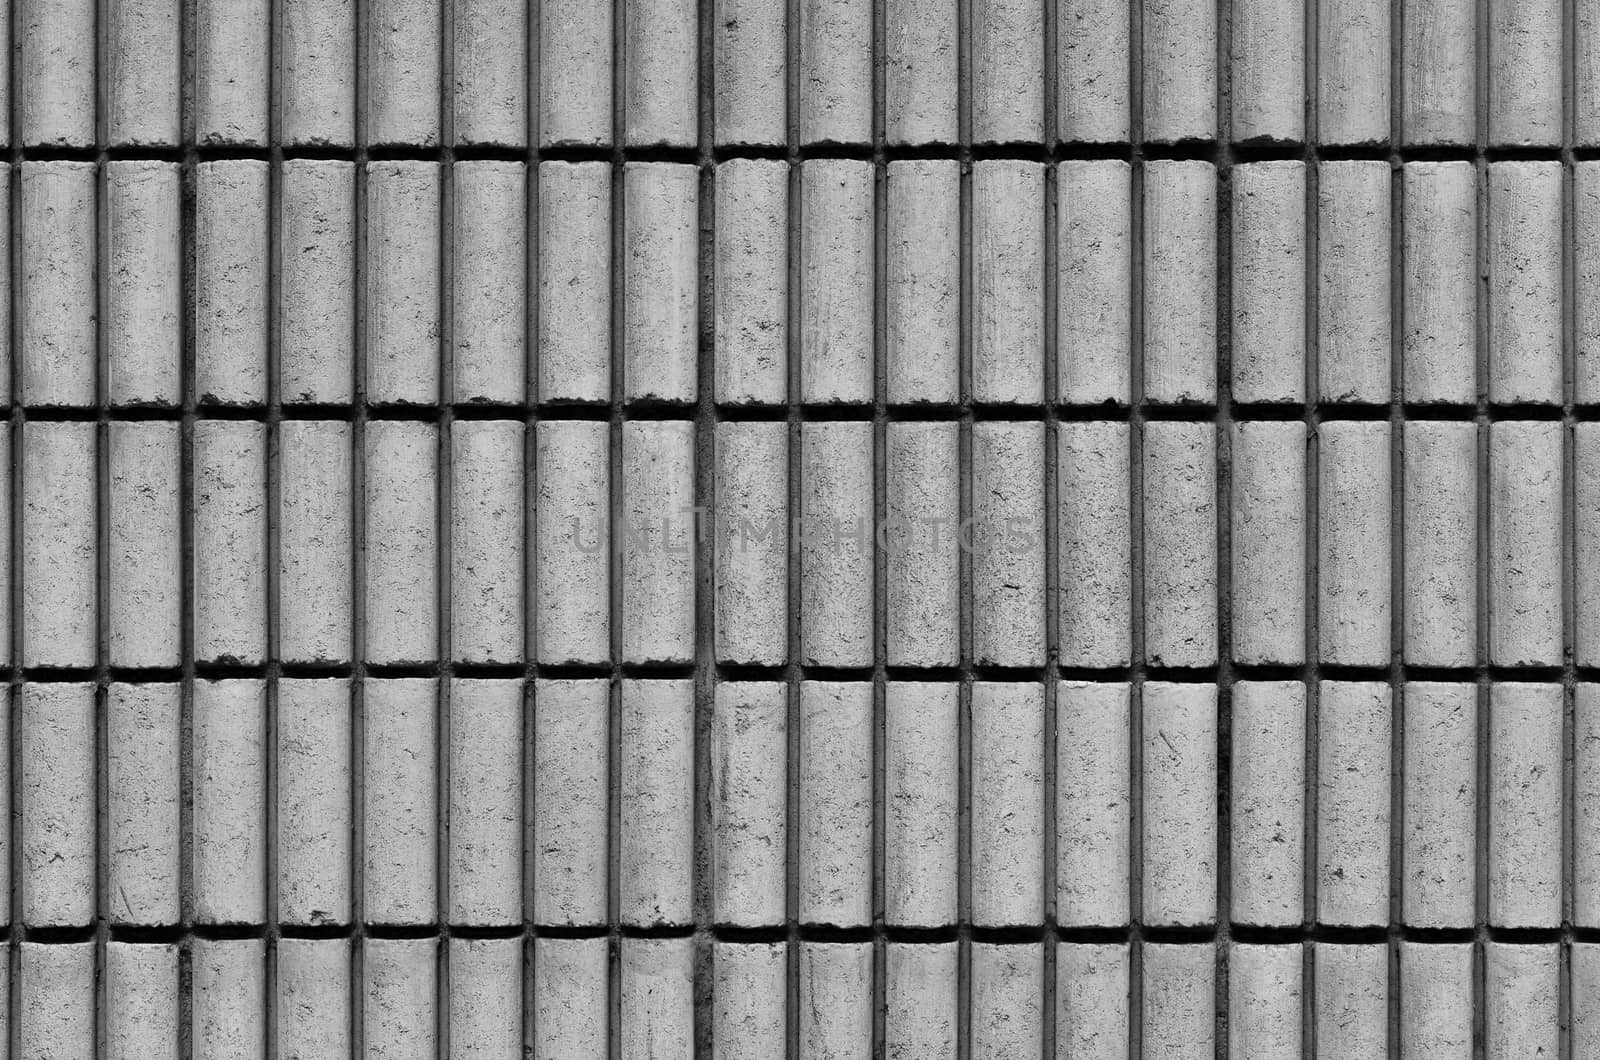 Brick Rectangular Background Wallpaper pattern by phochi